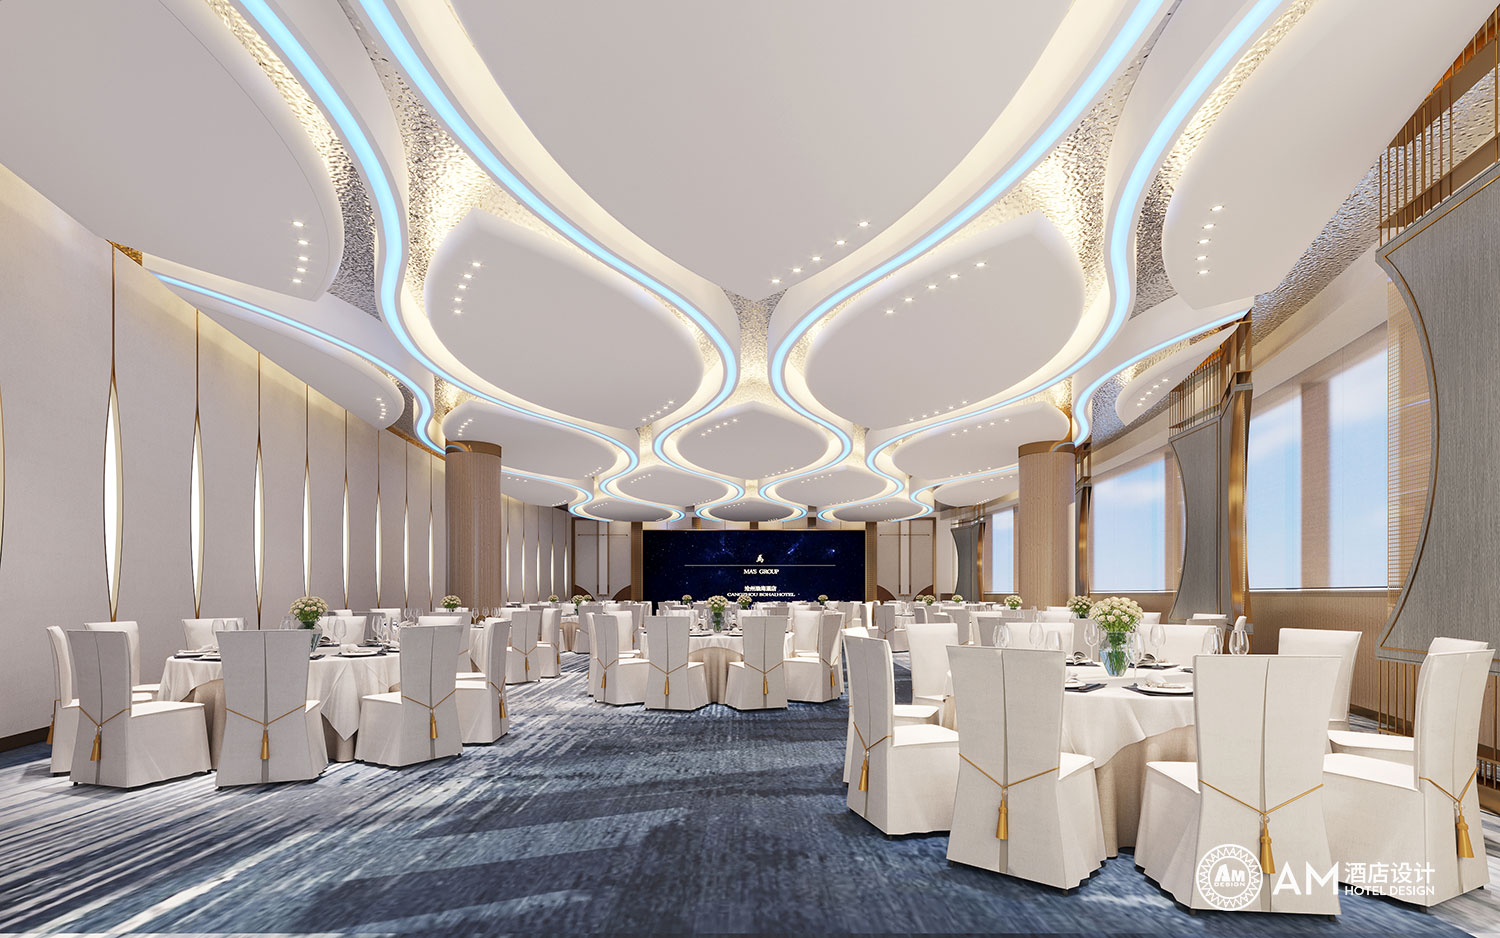 AM DESIGN | Banquet hall design of Cangzhou Bohai Hotel